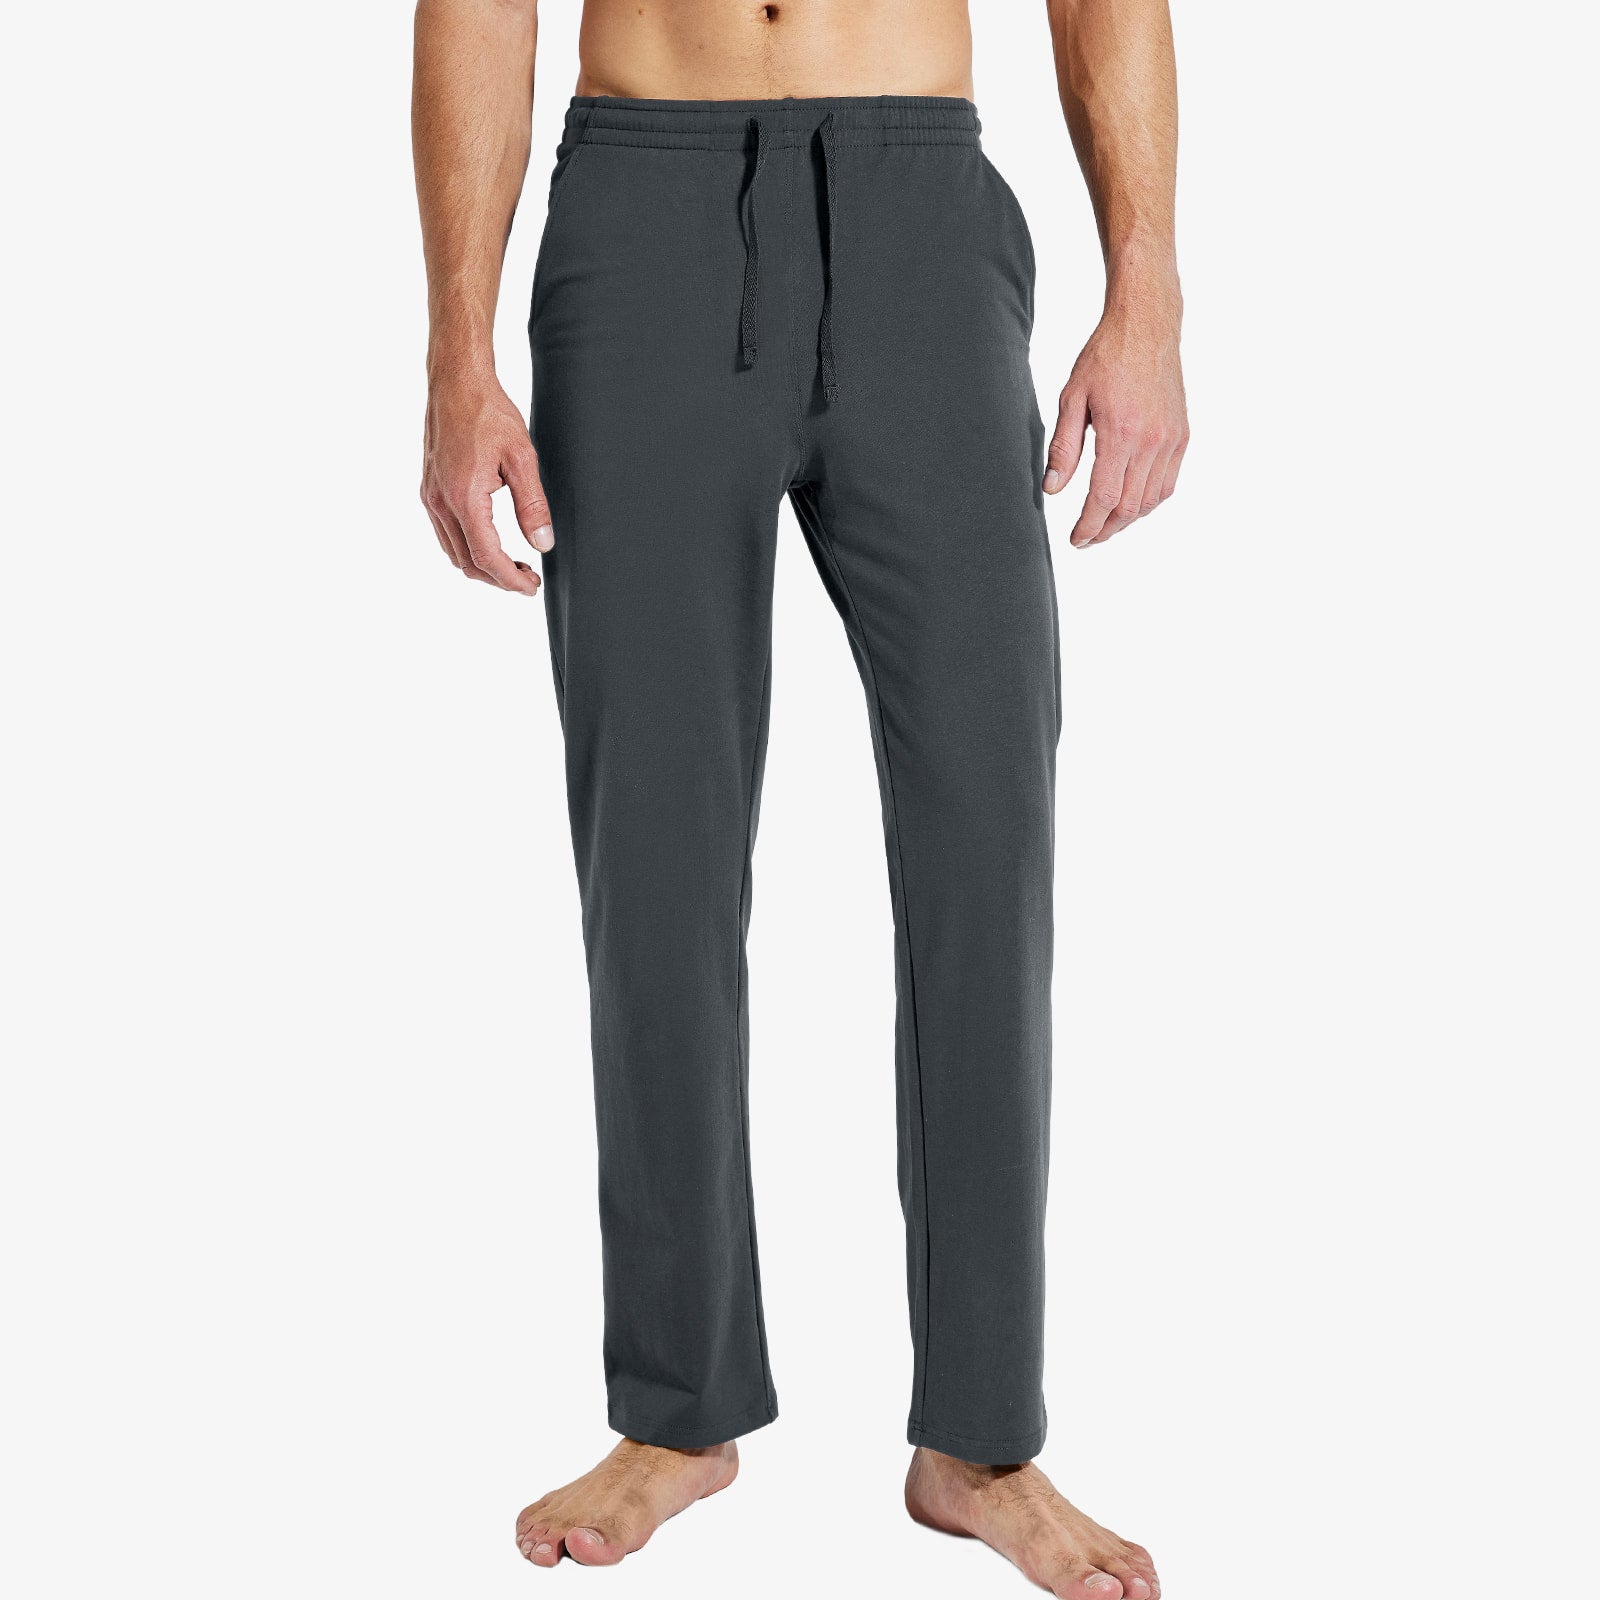 MIER Men's Cotton Sweatpants with Pockets Sports Knit Pants